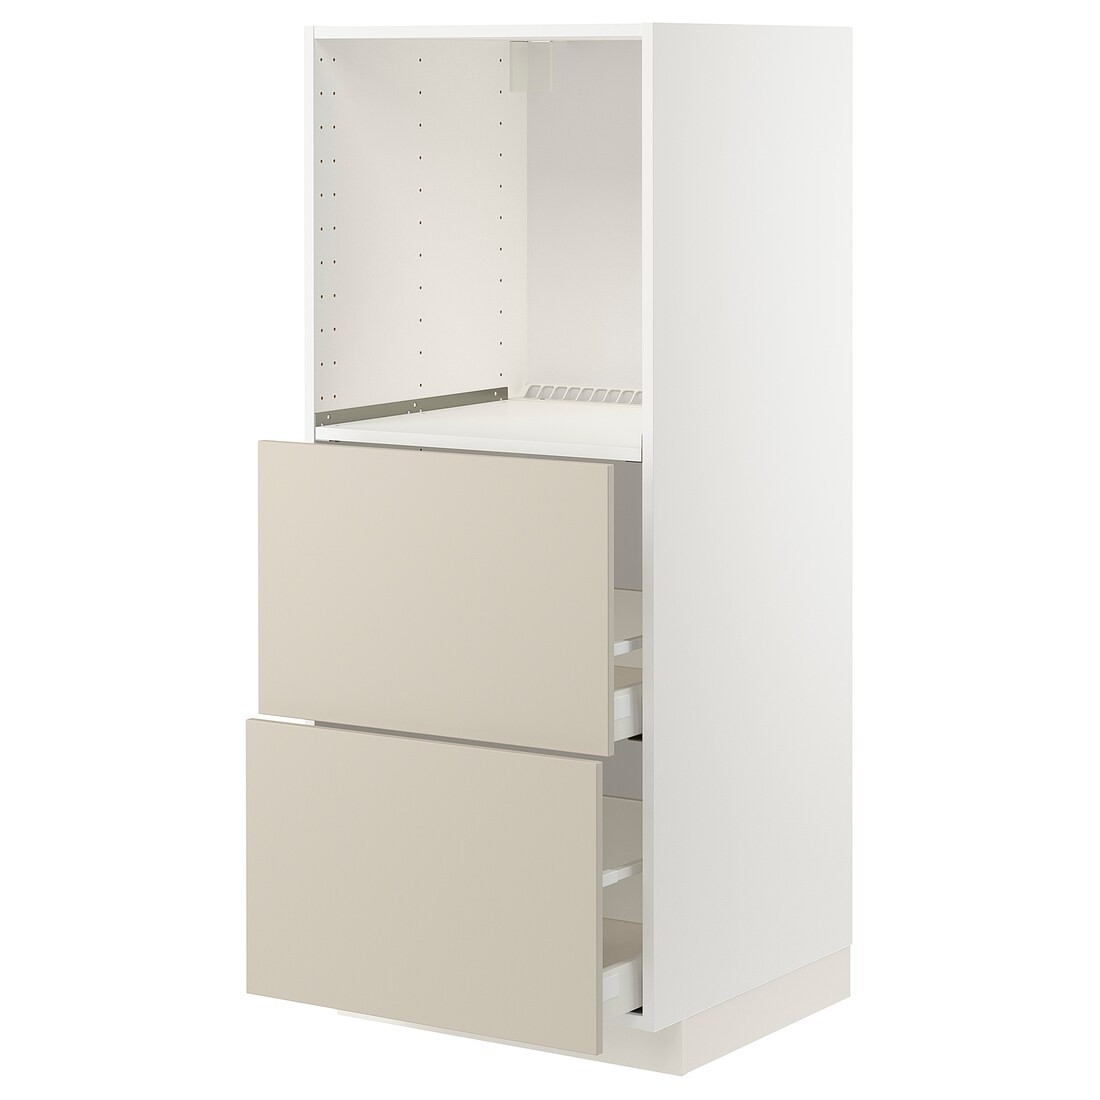 IKEA METOD МЕТОД / MAXIMERA МАКСИМЕРА Высокий шкаф с 2 ящиками для духовки, белый / Havstorp бежевый, 60x60x140 см 49426817 494.268.17